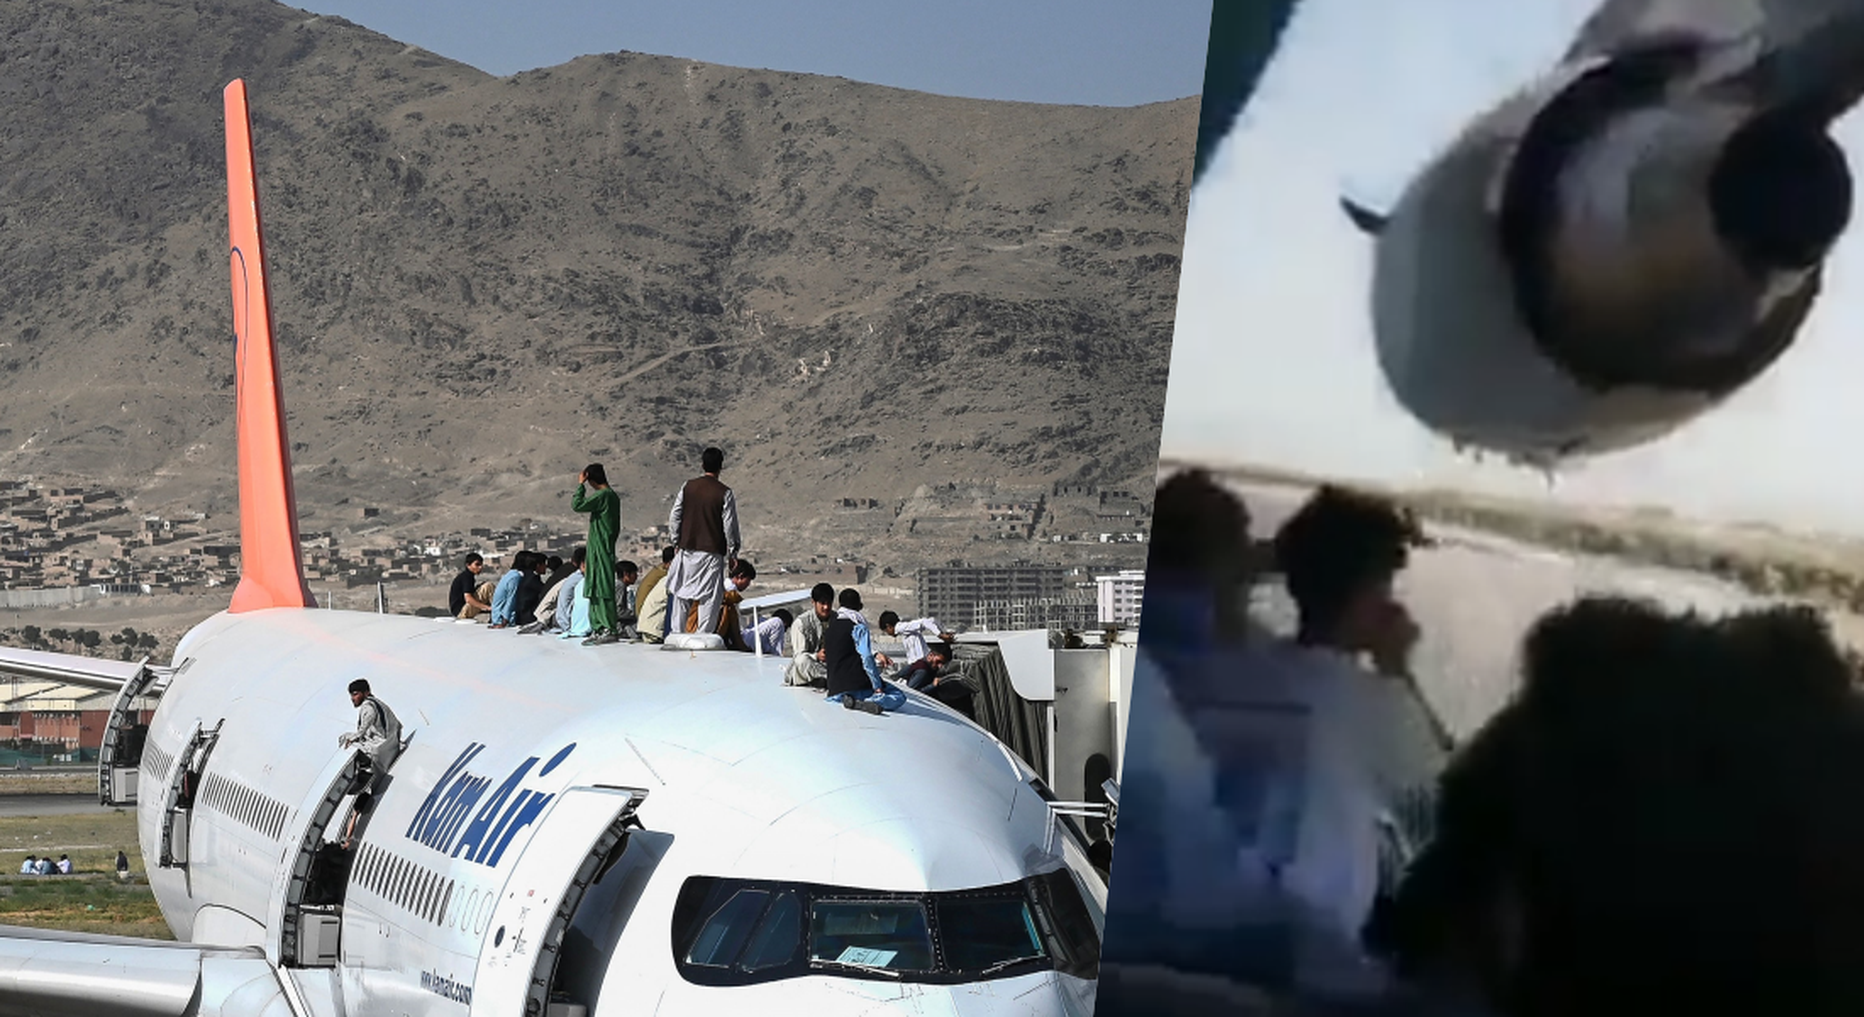 Inimesed Kabuli lennujaamas seisval lennukil. Kuvatõmmis videost.